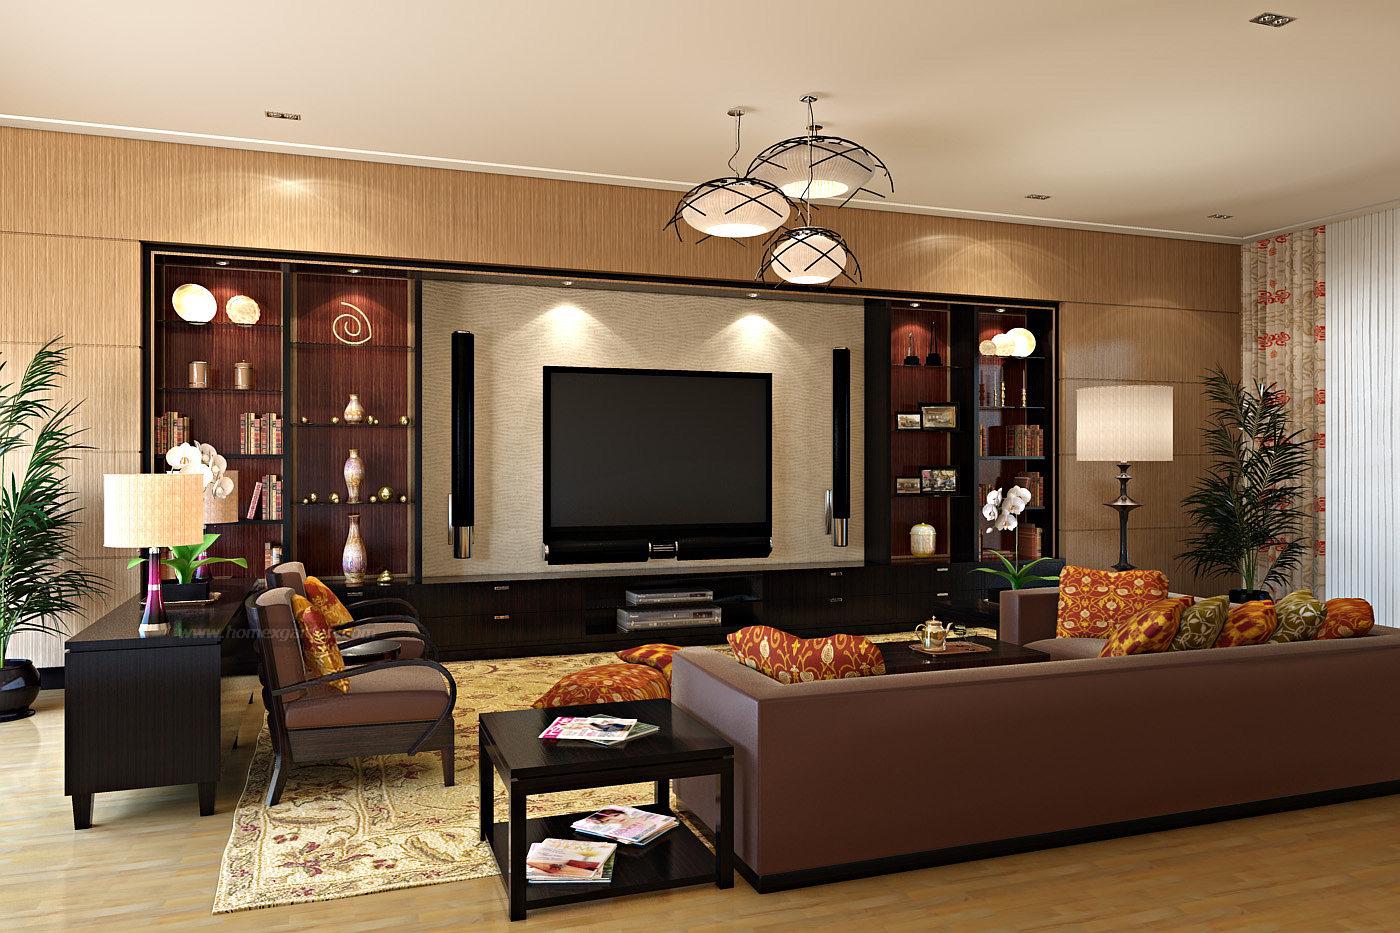 ... free awesome house interior design with amusing sofa facing audio set UANASZY